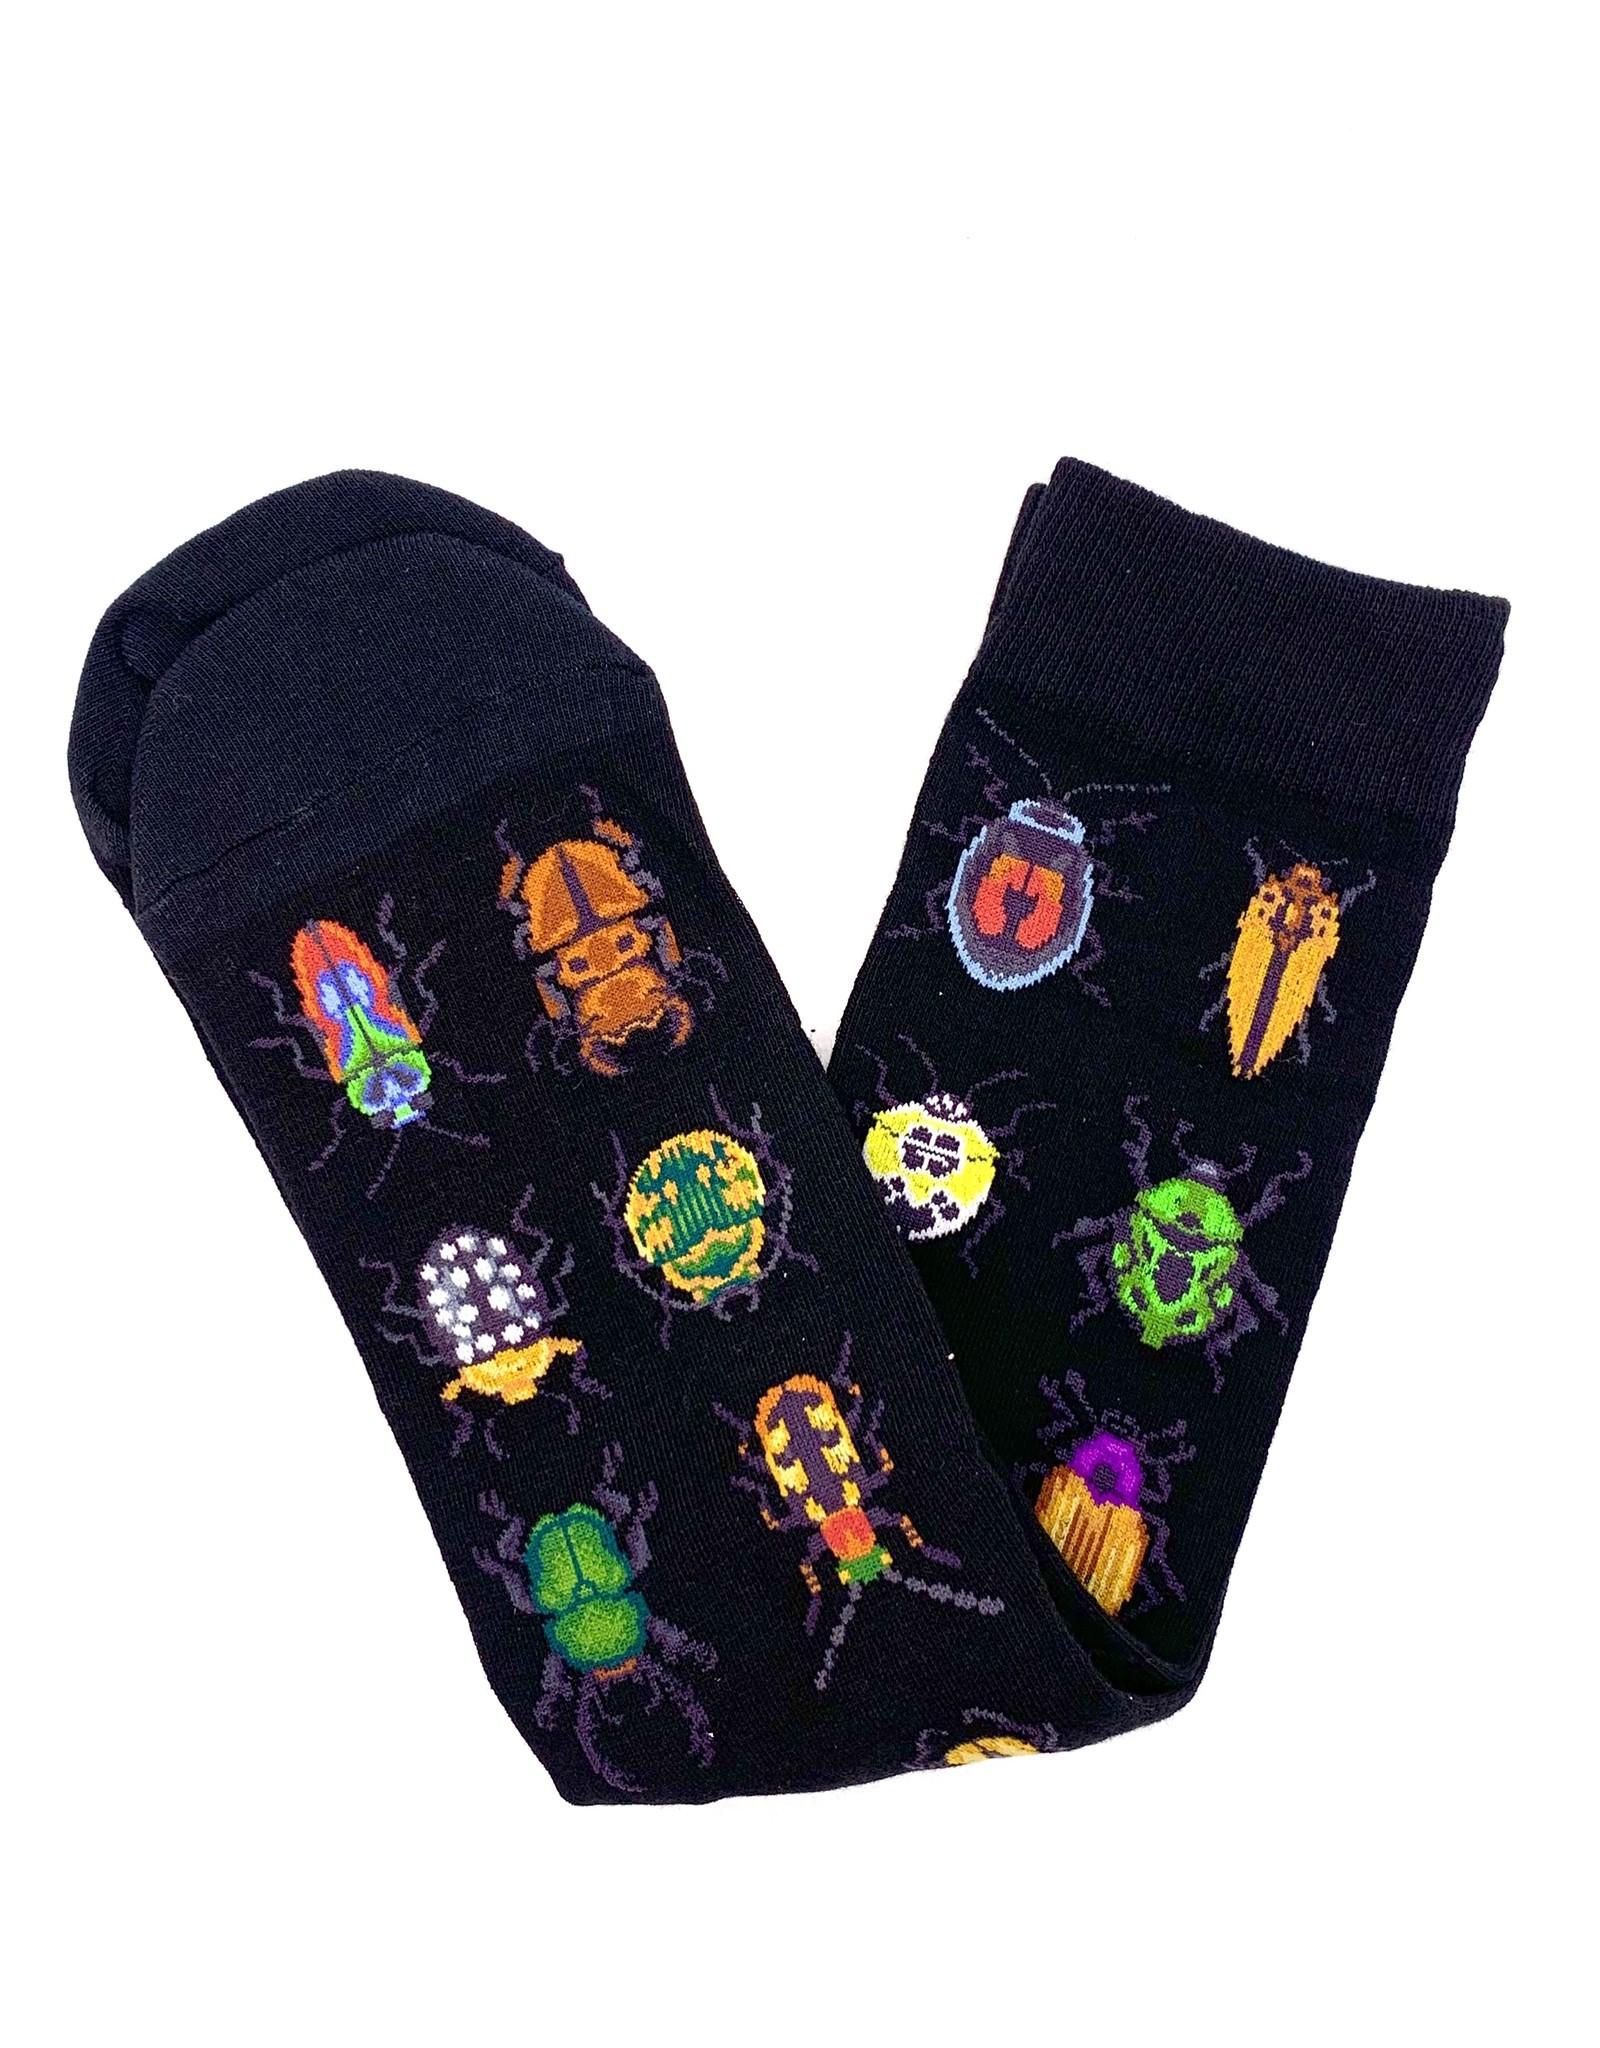 Beetles Socks